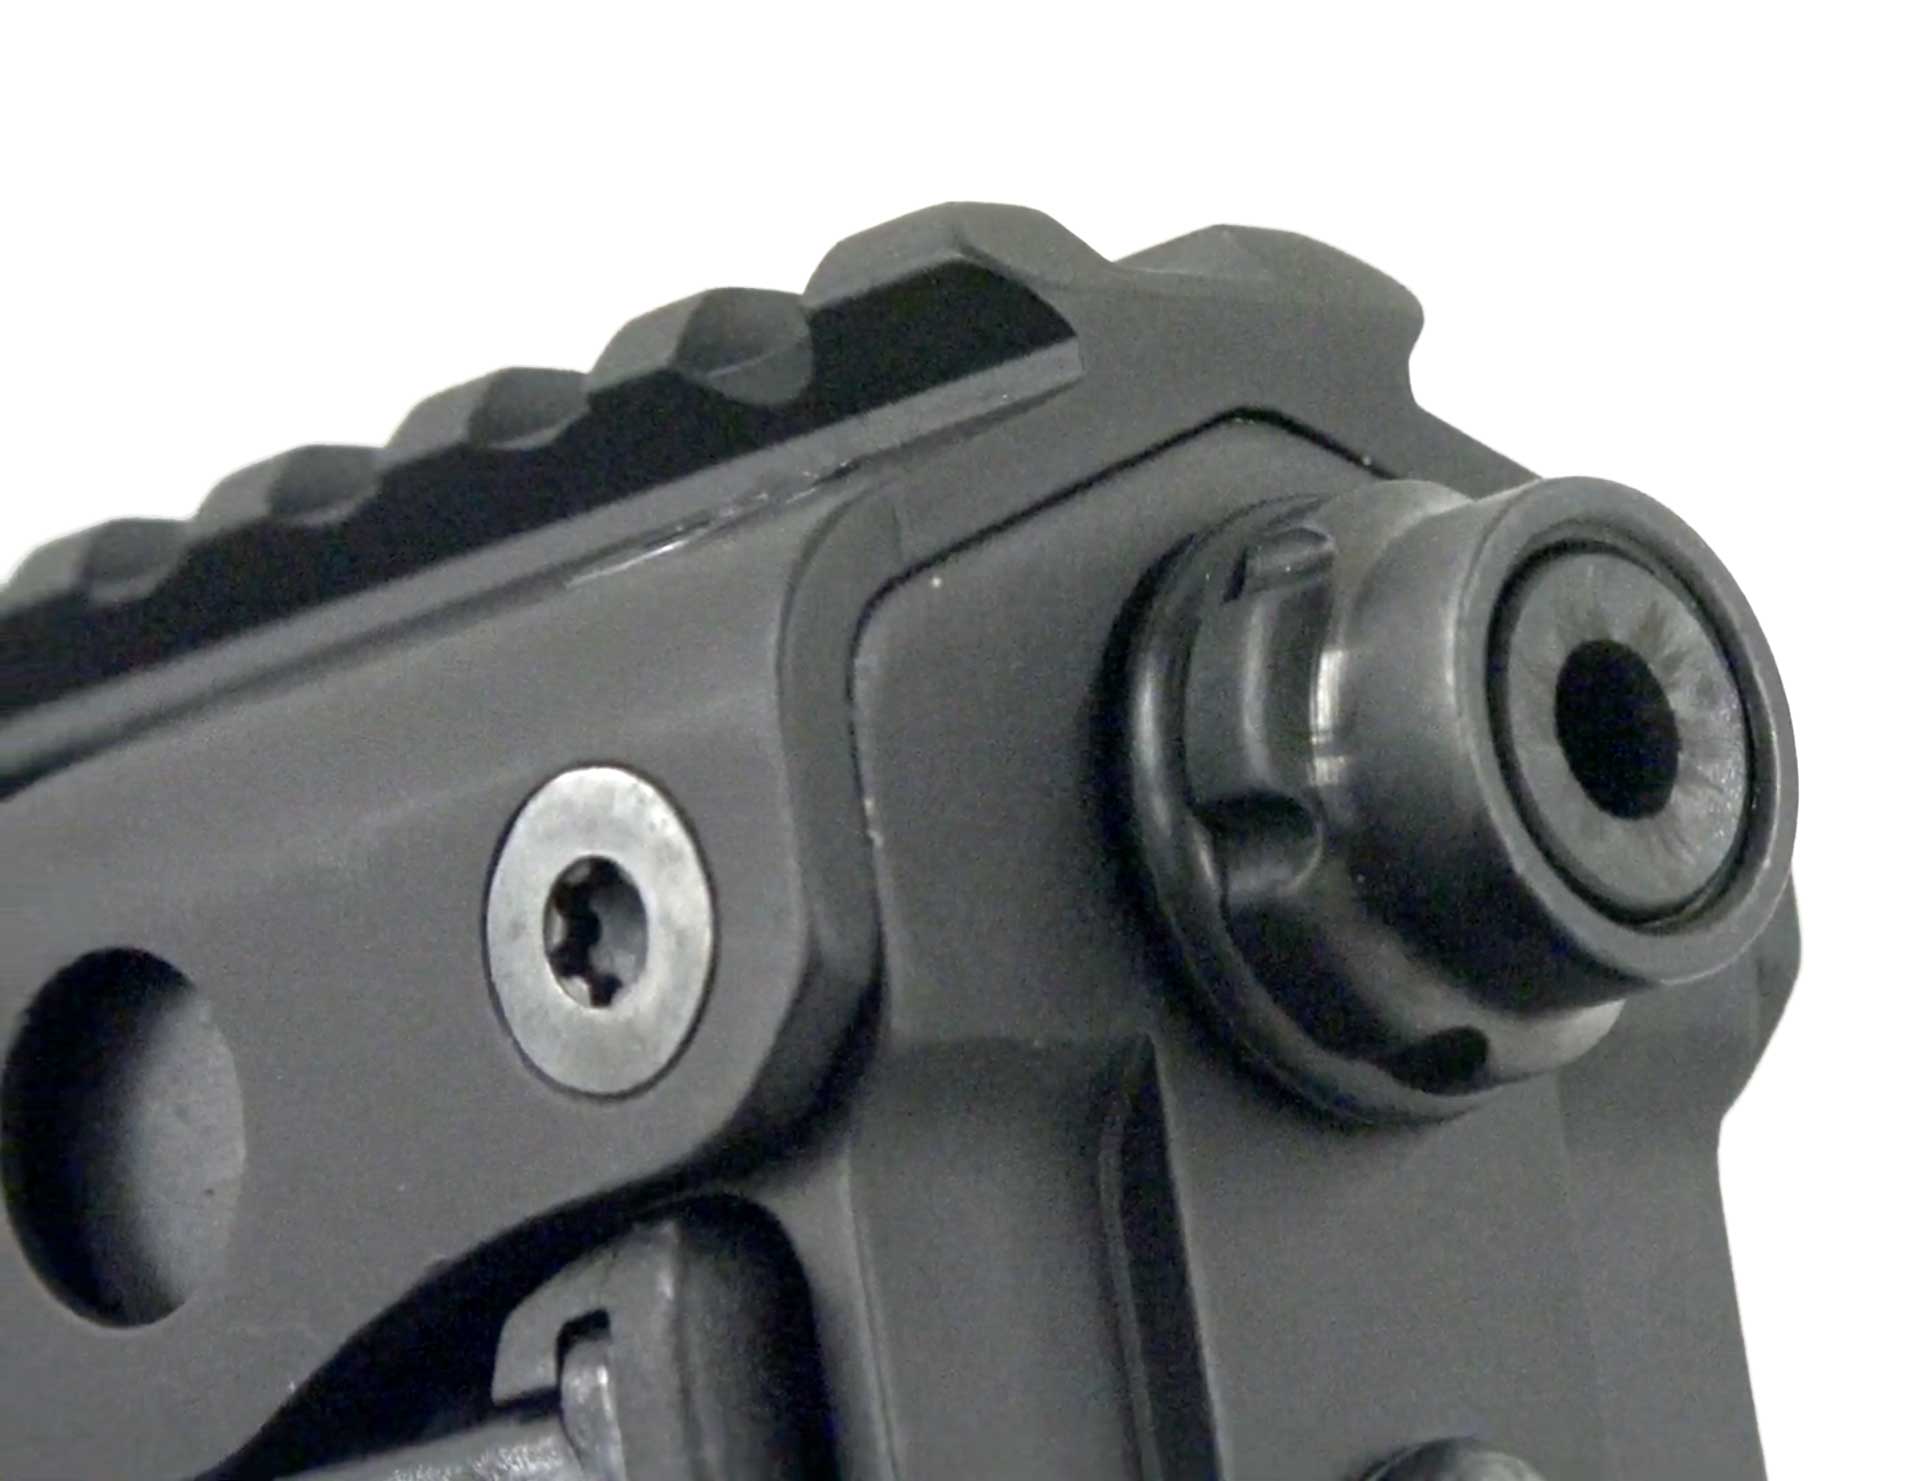 gun parts pistol barrel metal aluminum black steel kel-tec p50